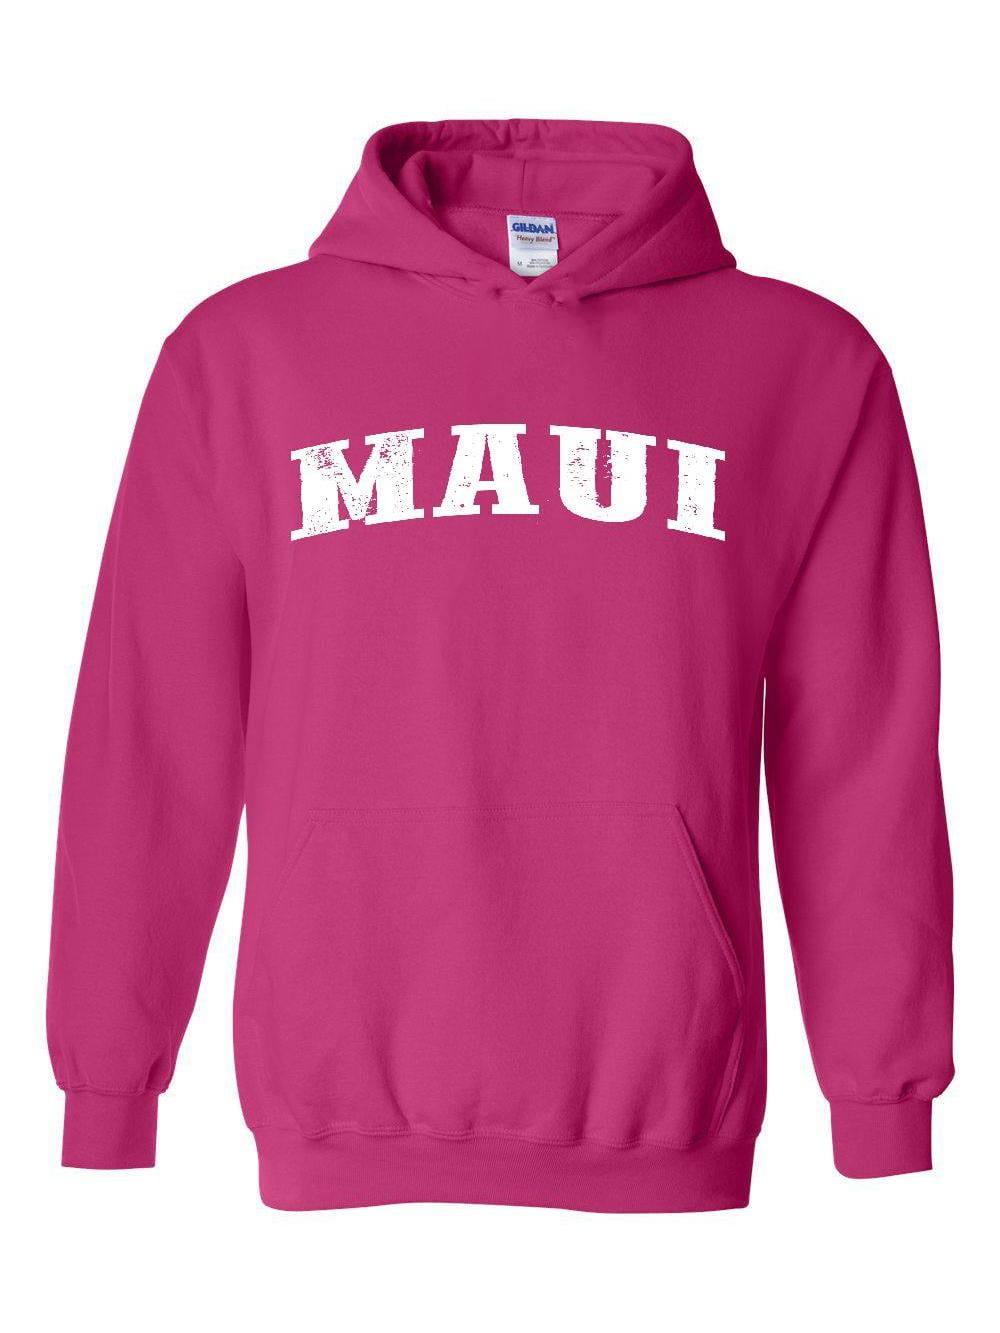 Maui Hawaii Hooded Sweatshirt Vintage Unisex Maui Hawaii Hoodie